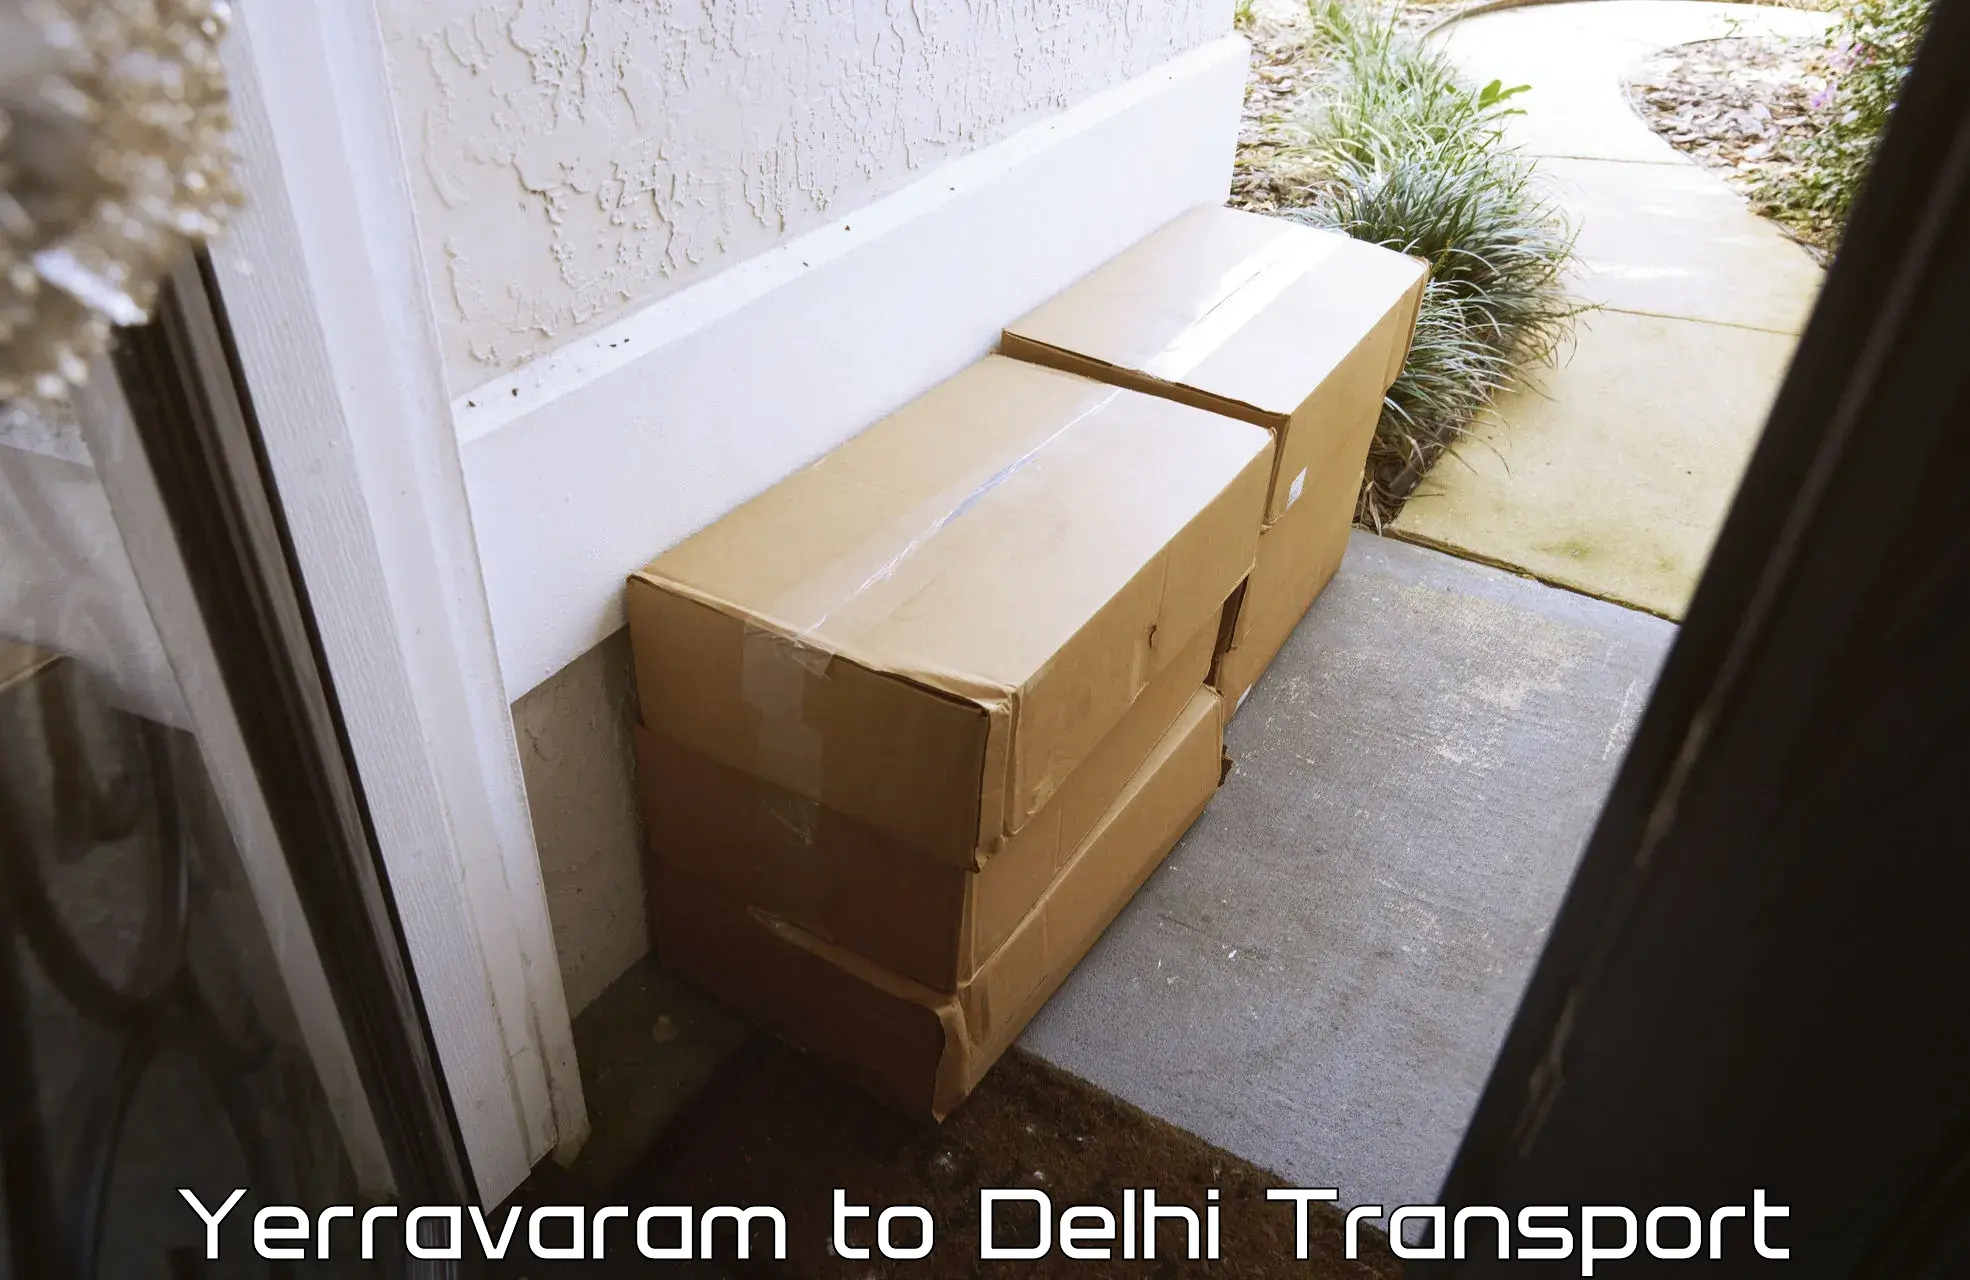 Part load transport service in India Yerravaram to Burari